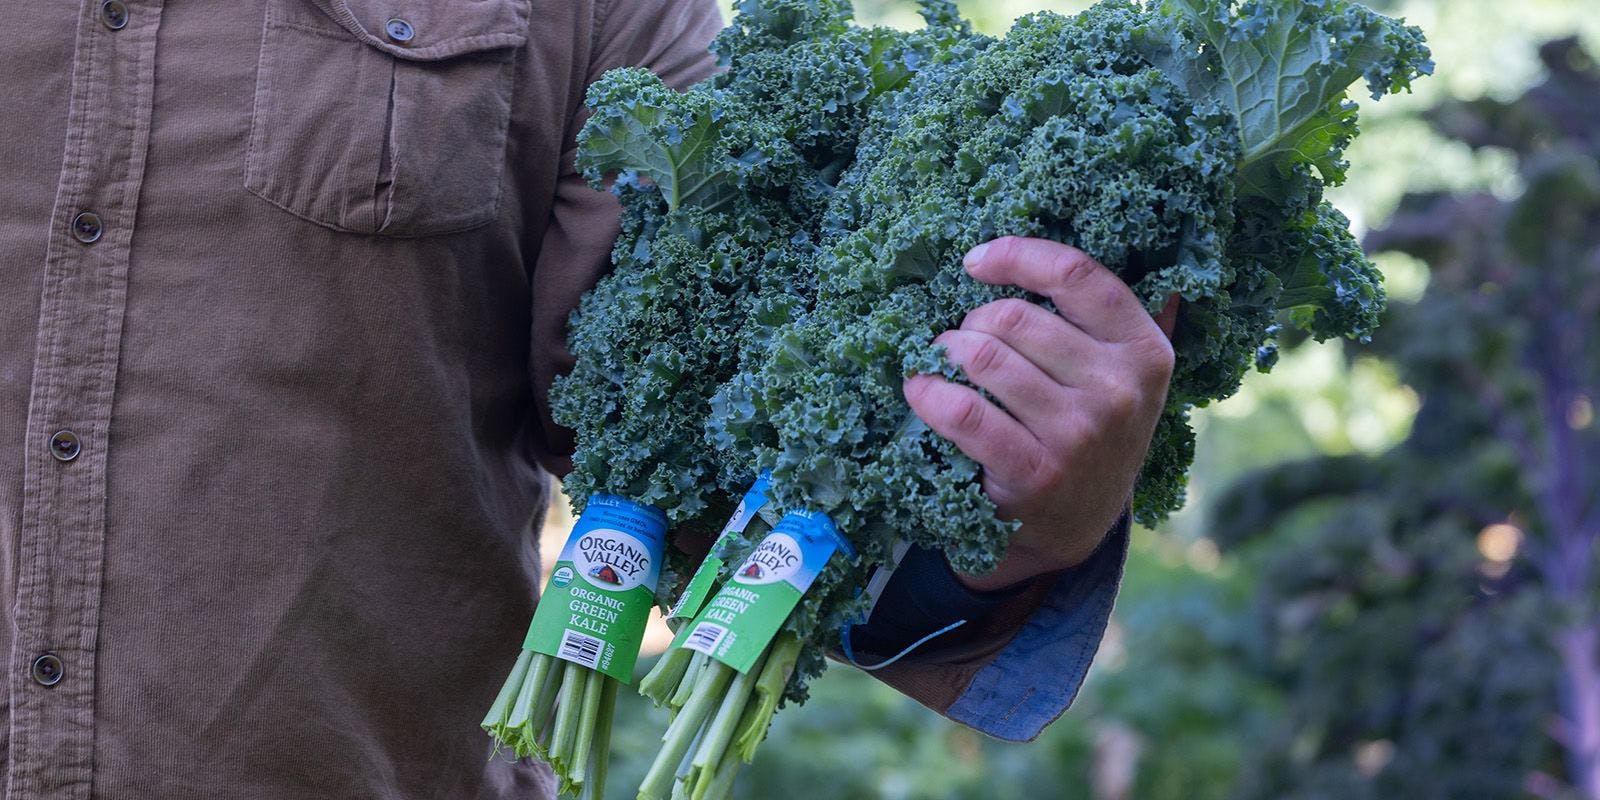 Man holding Organic Valley Kale.